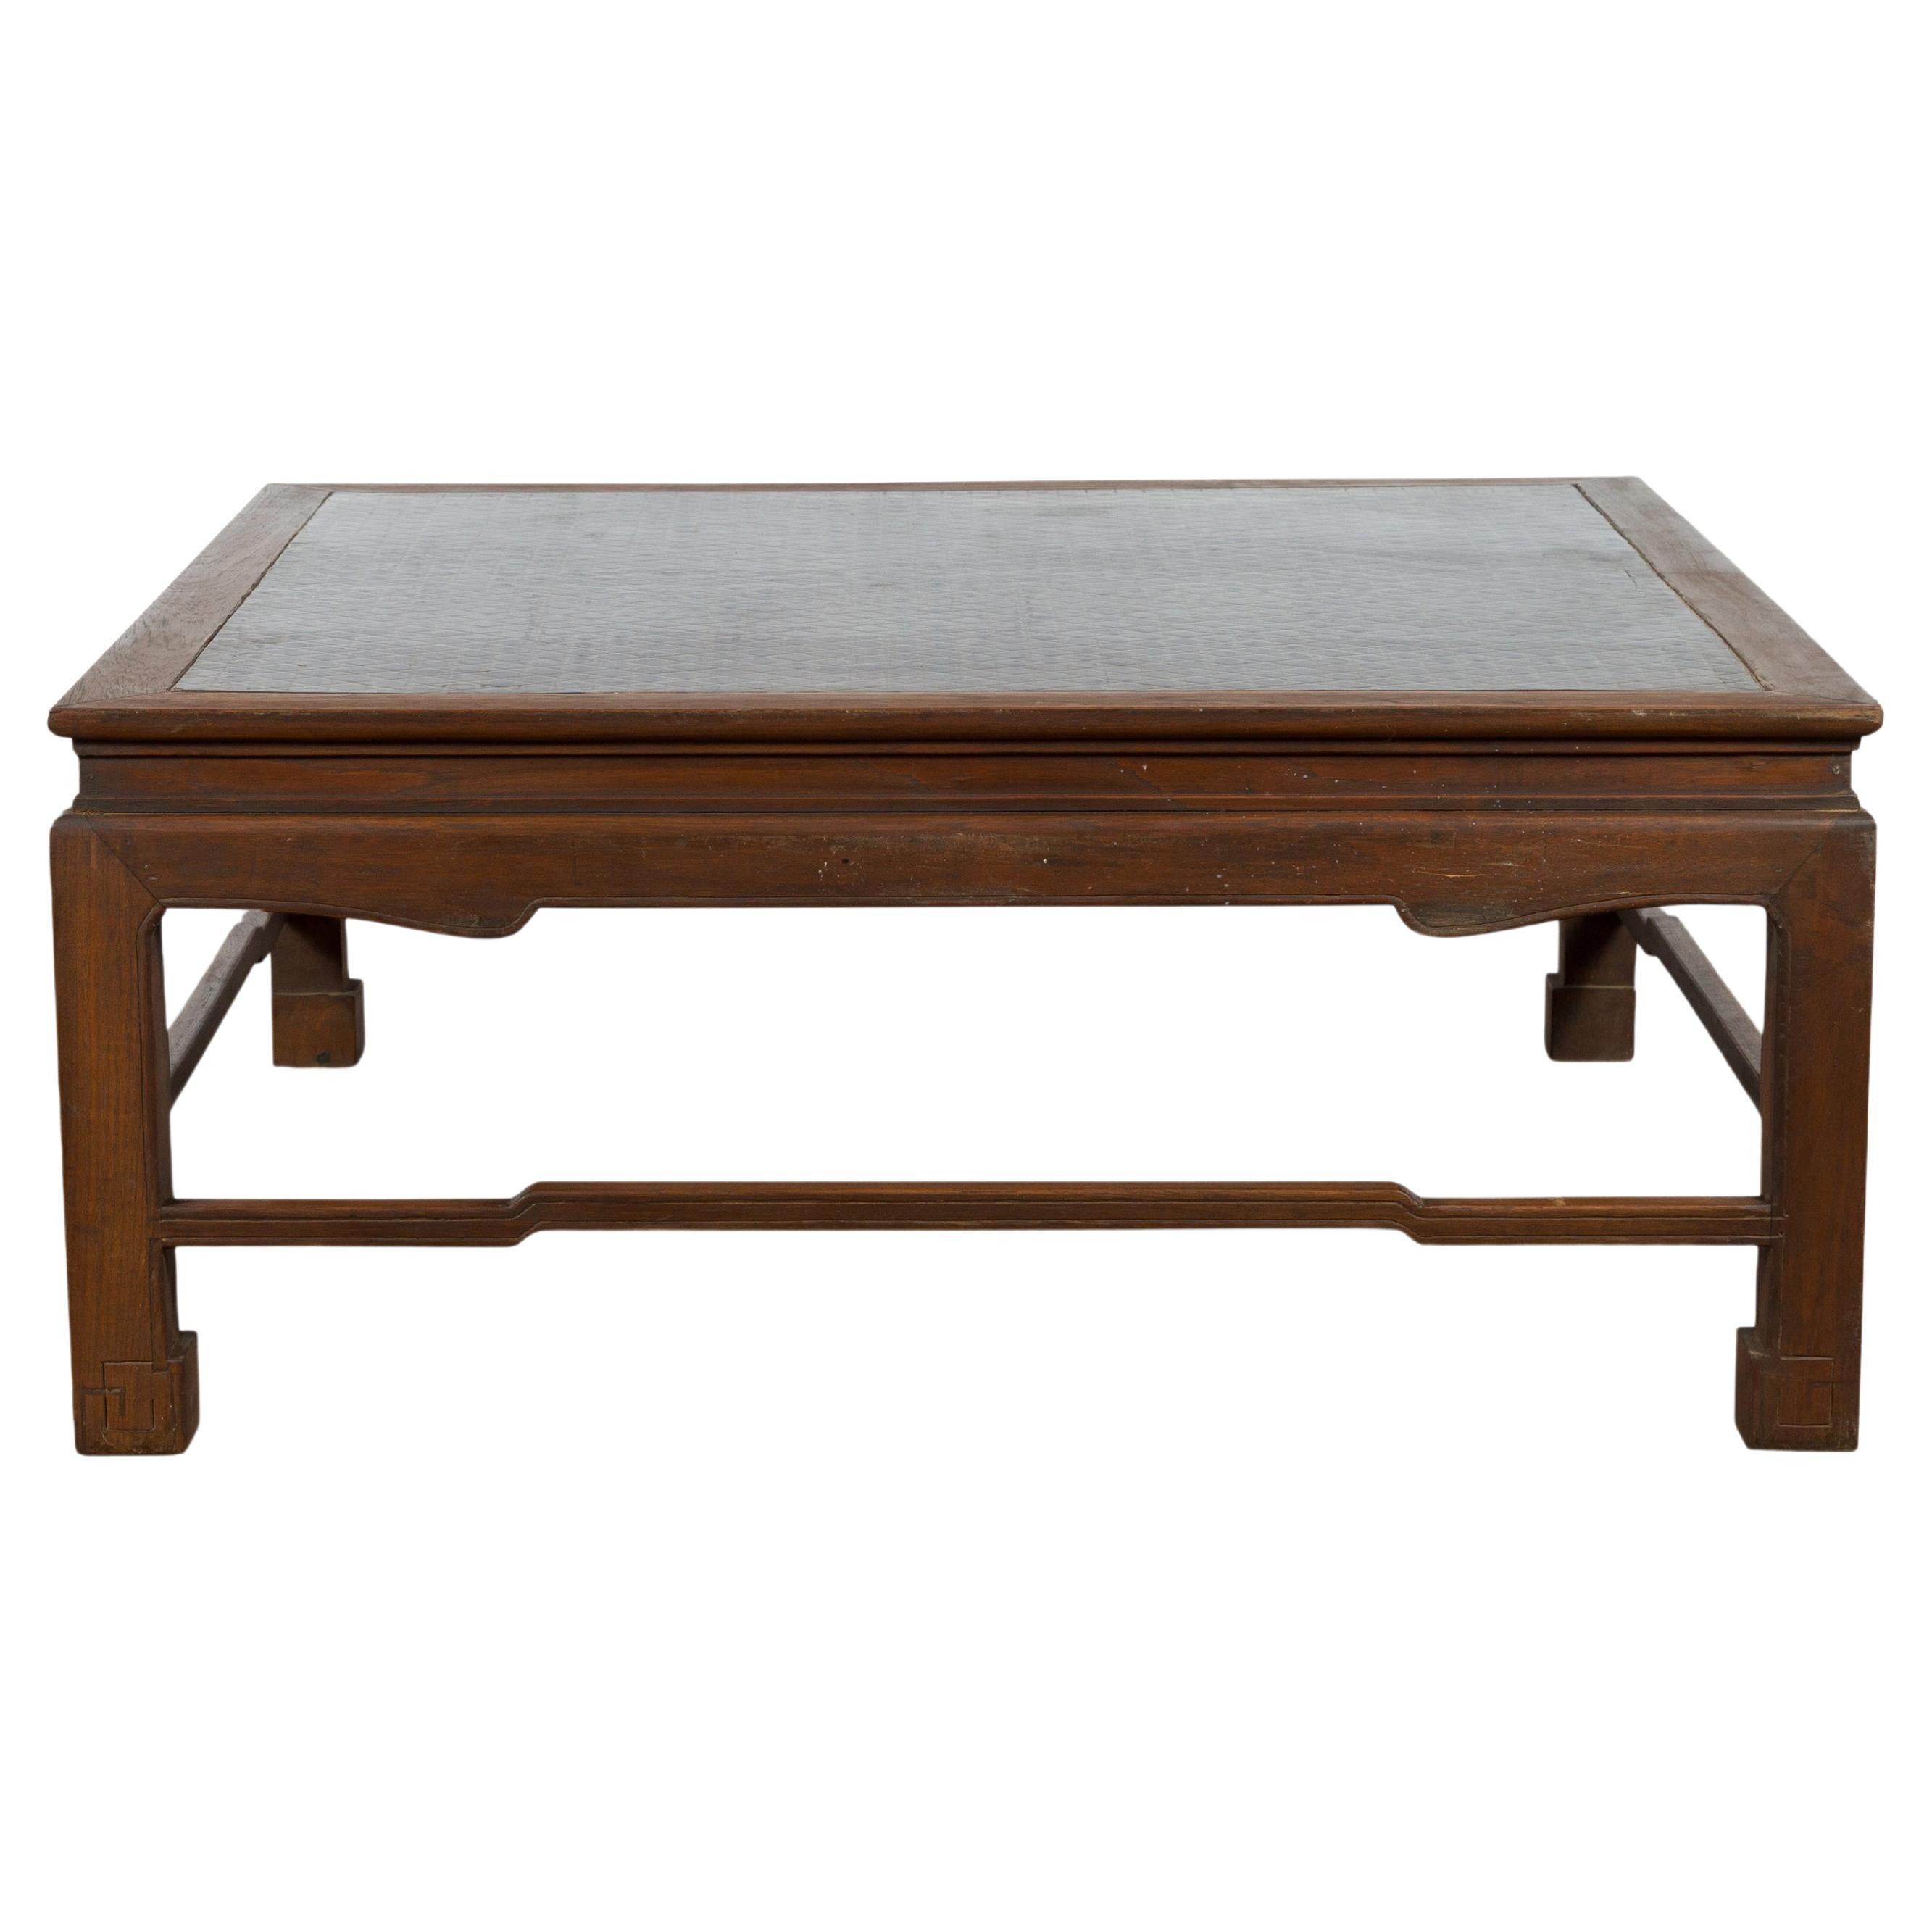 Table basse birmane vintage en bois brun avec plateau en laque Negora encastr